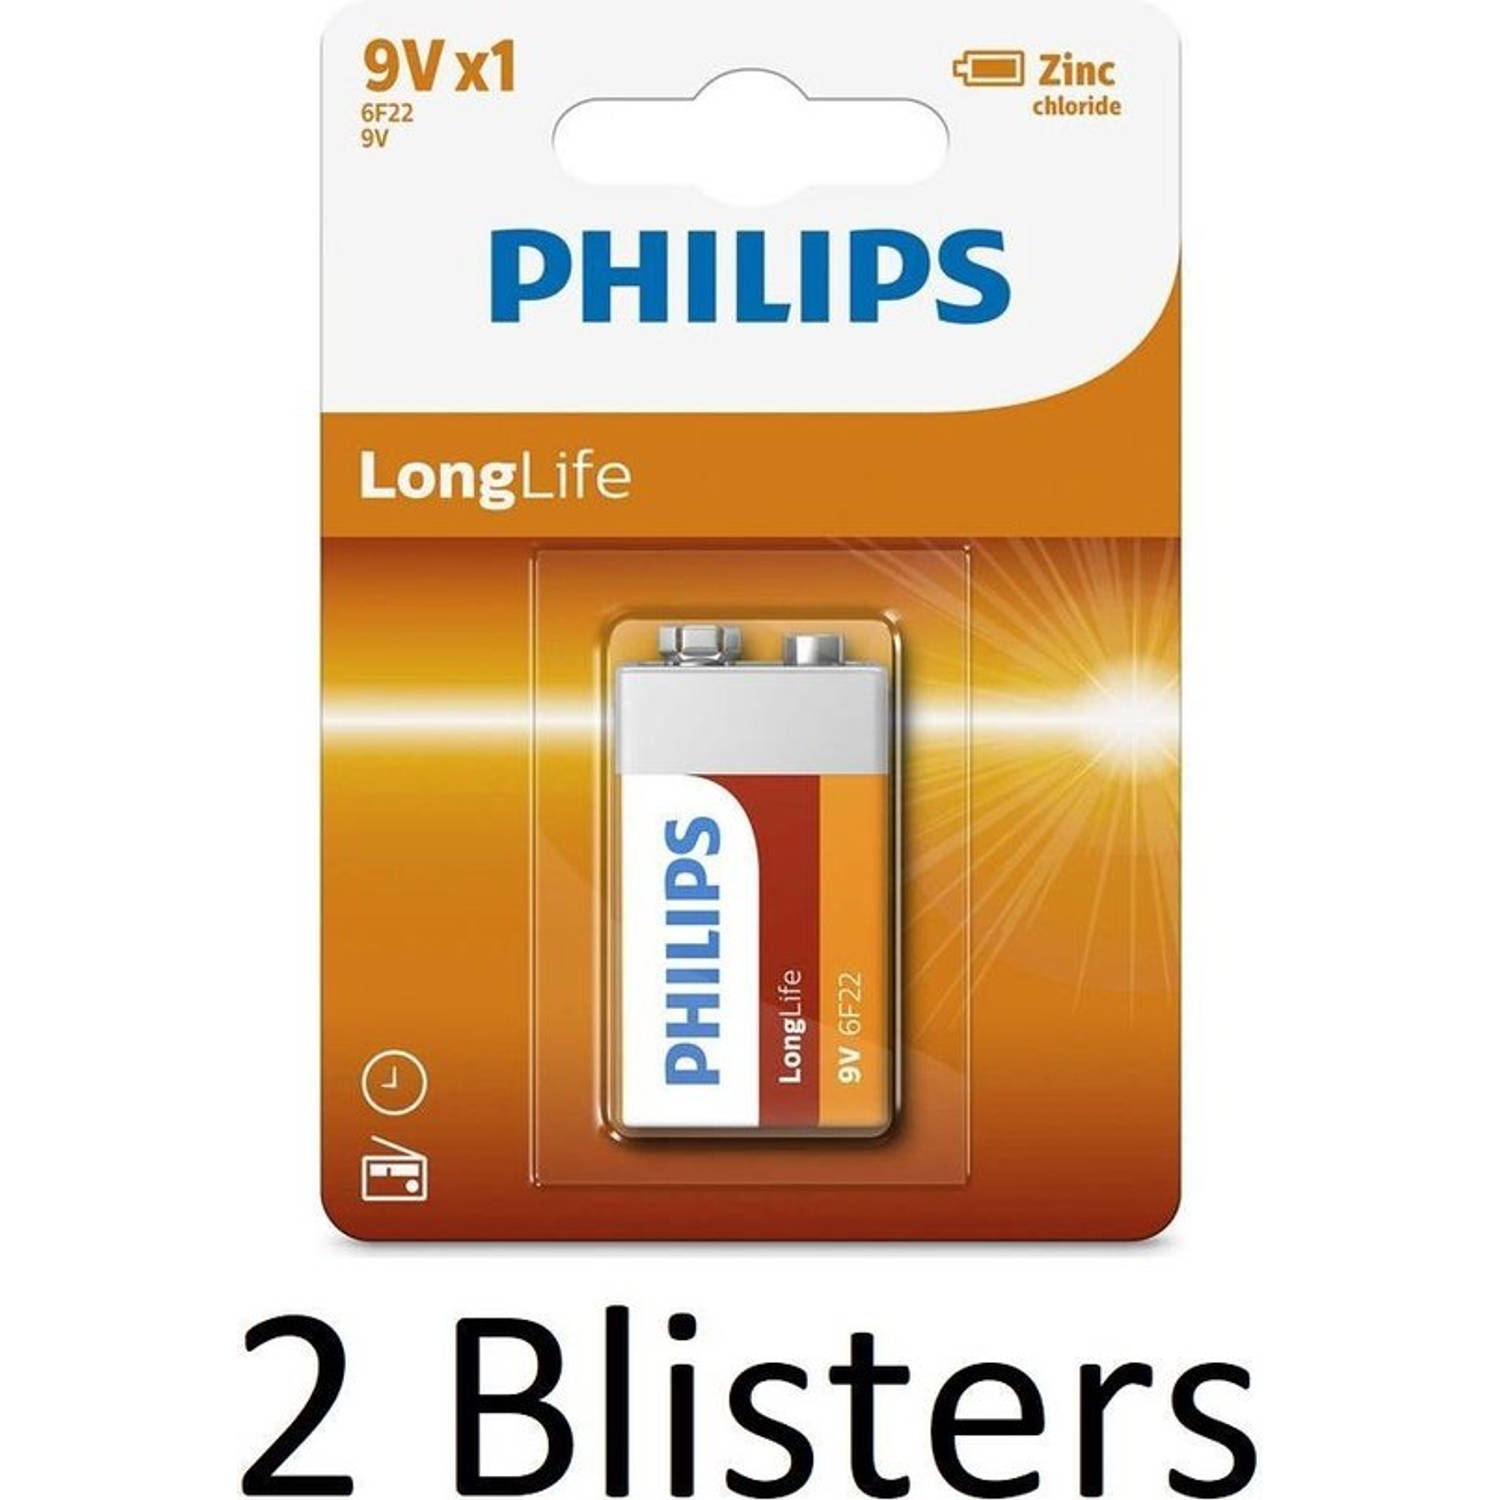 2 Stuks (2 Blisters a 1 st) Philips Longlife 9V Batterijen